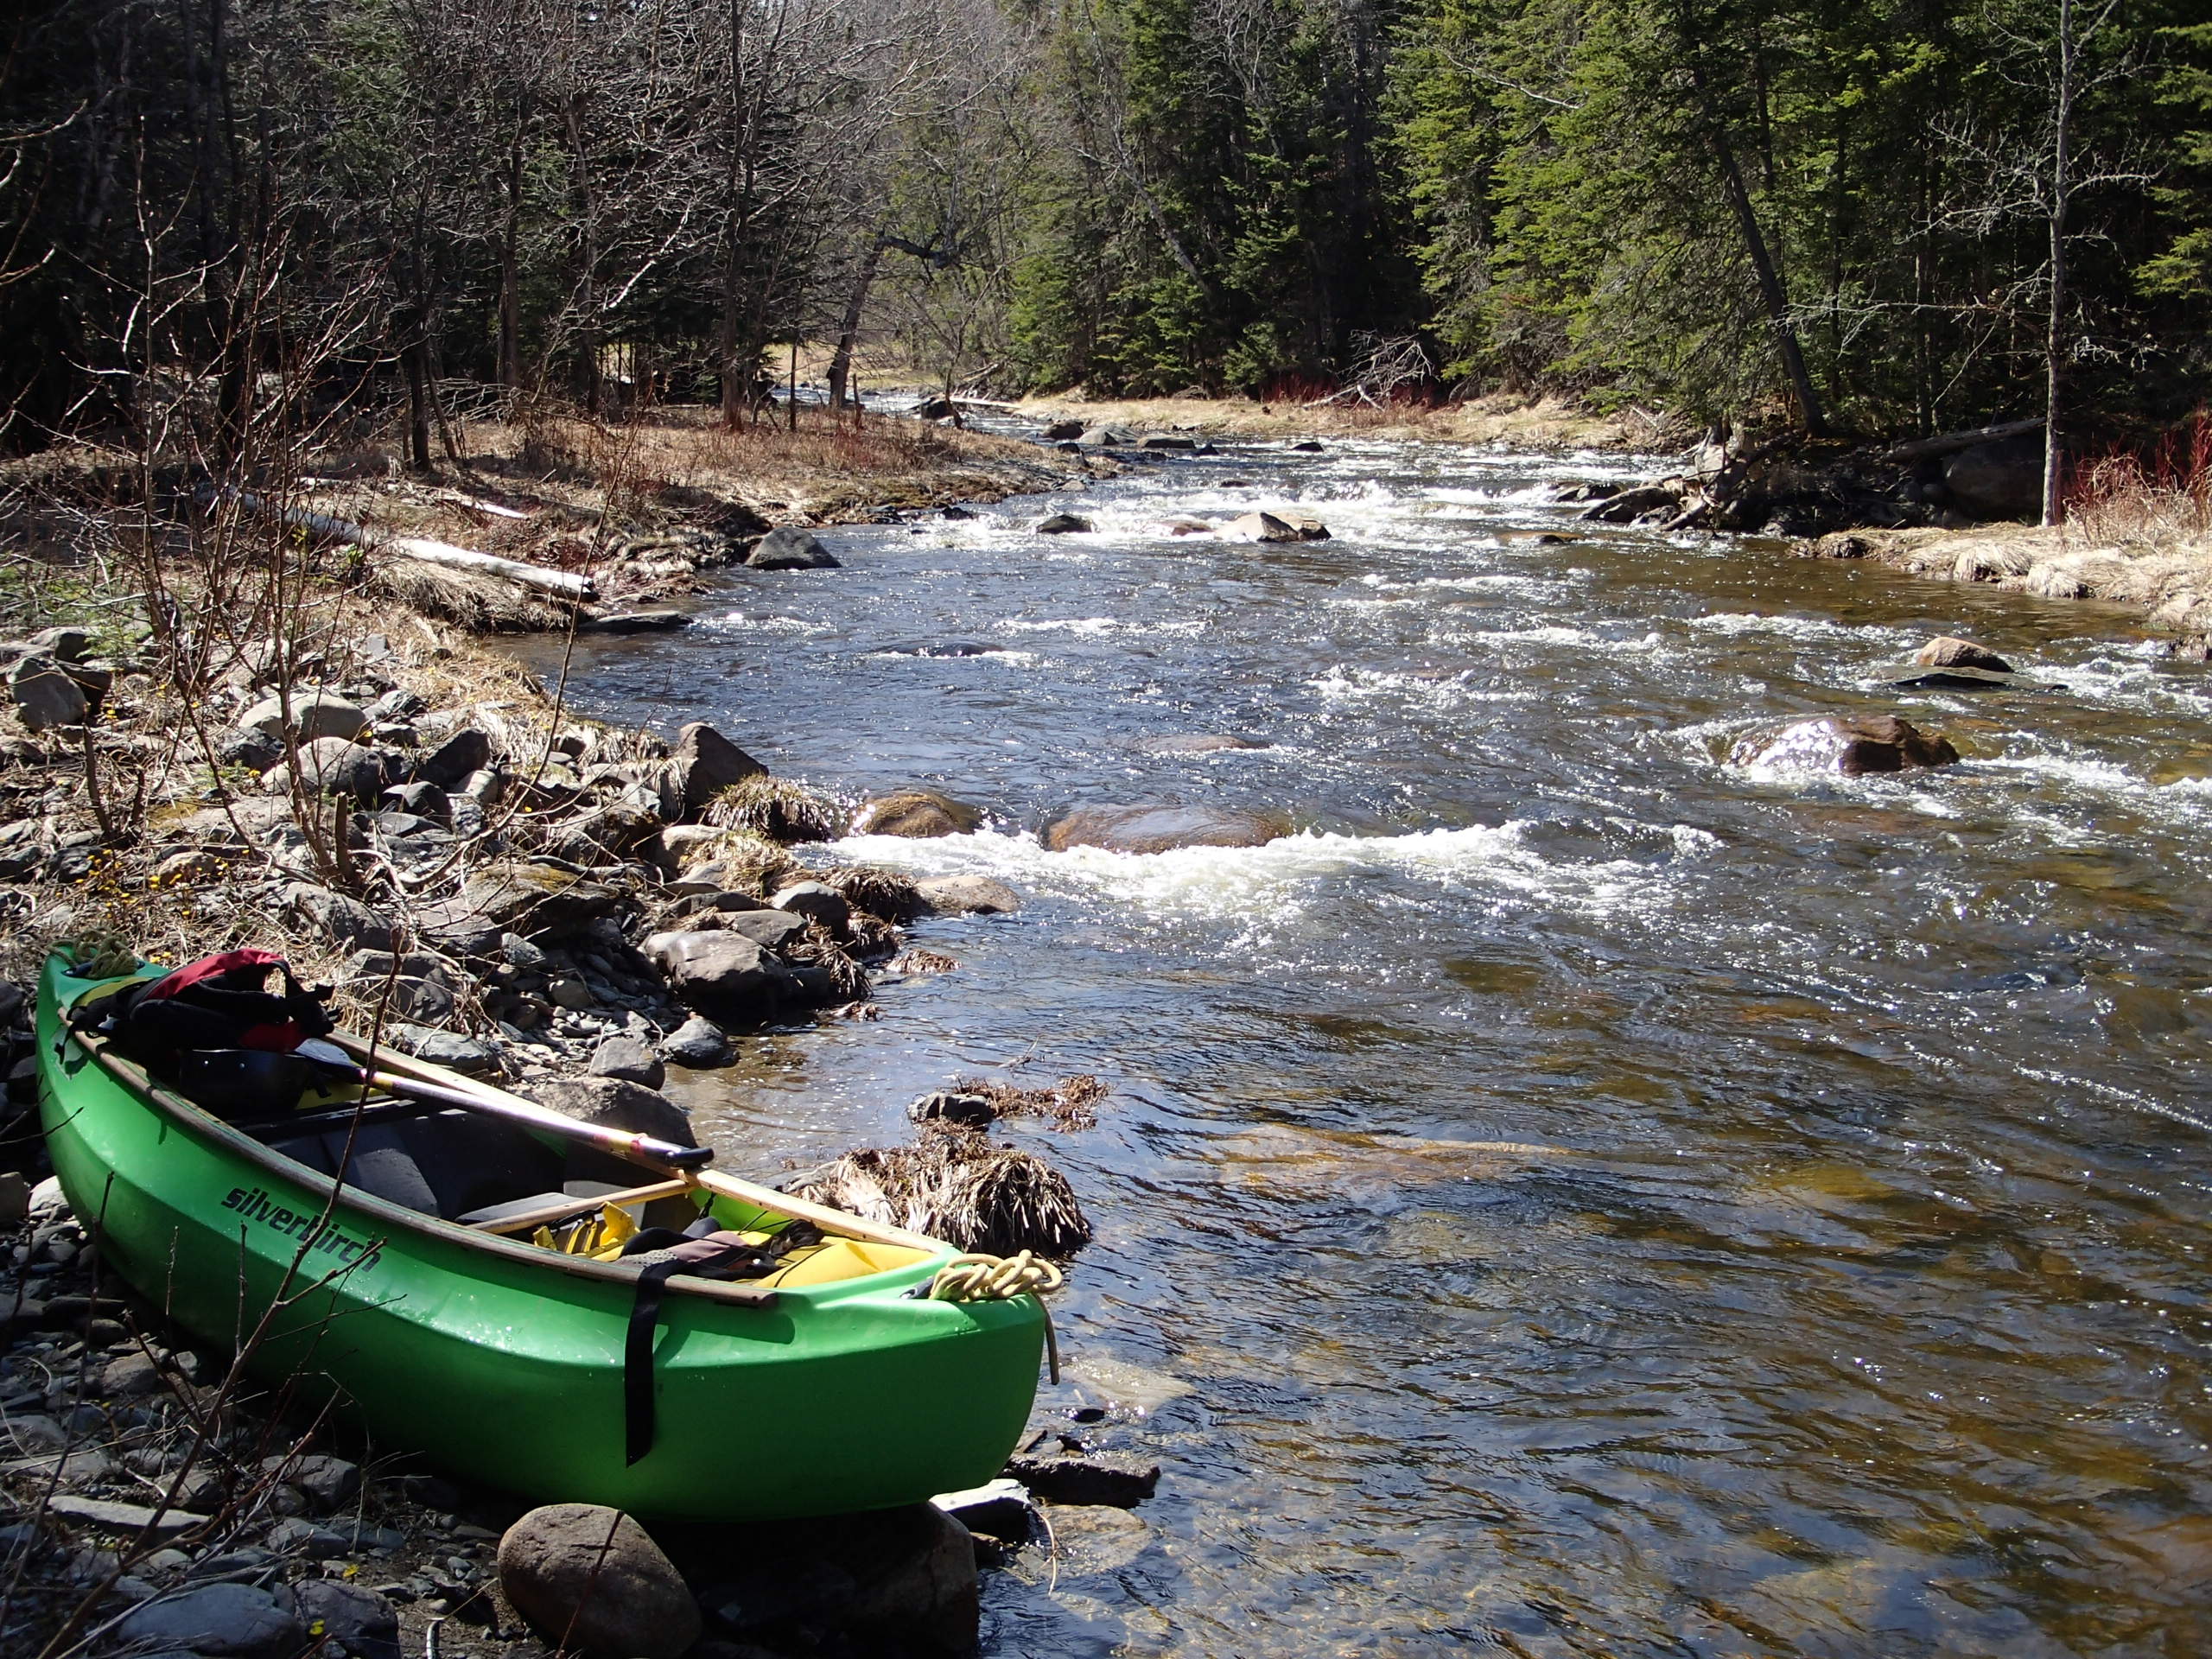 Vue sur une rivière, temps ensoleillé, un kayak vide au premier plan